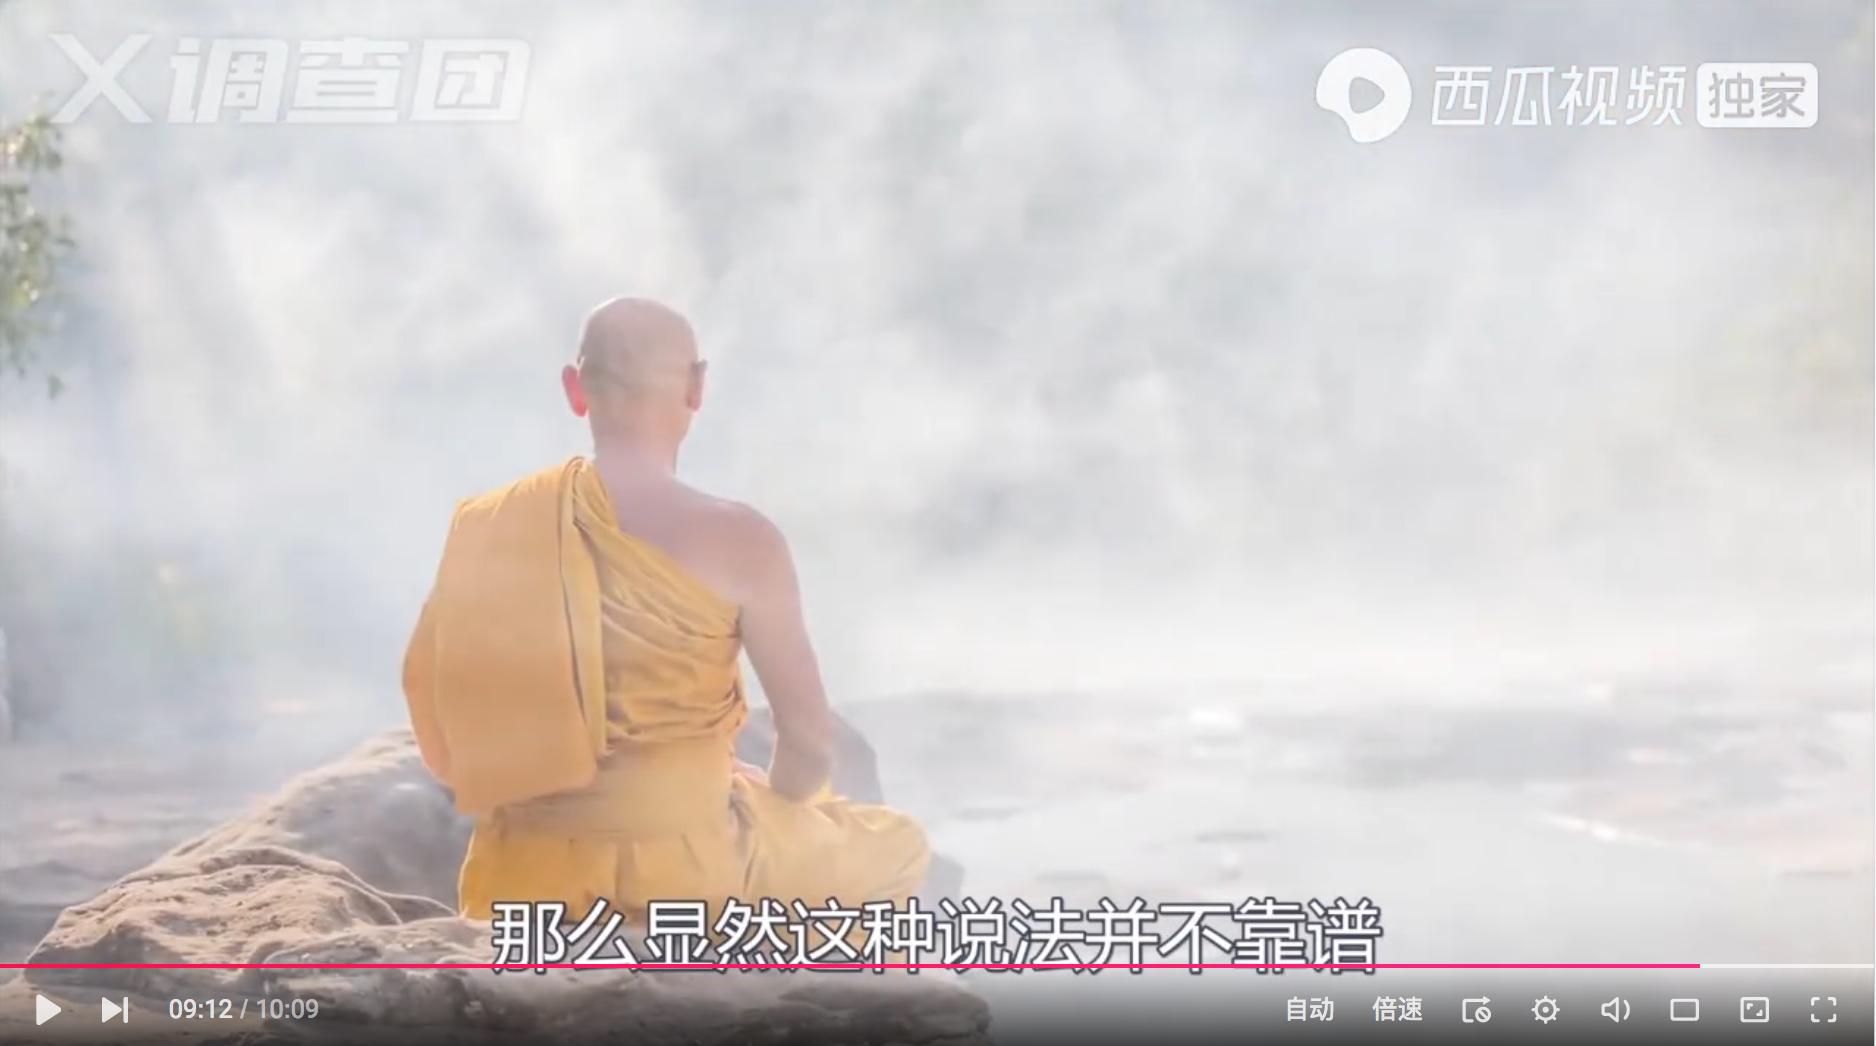 藏传佛教不可外传的“虹化”之谜 解密神秘的高僧肉身虹化现象 - 哔哩哔哩